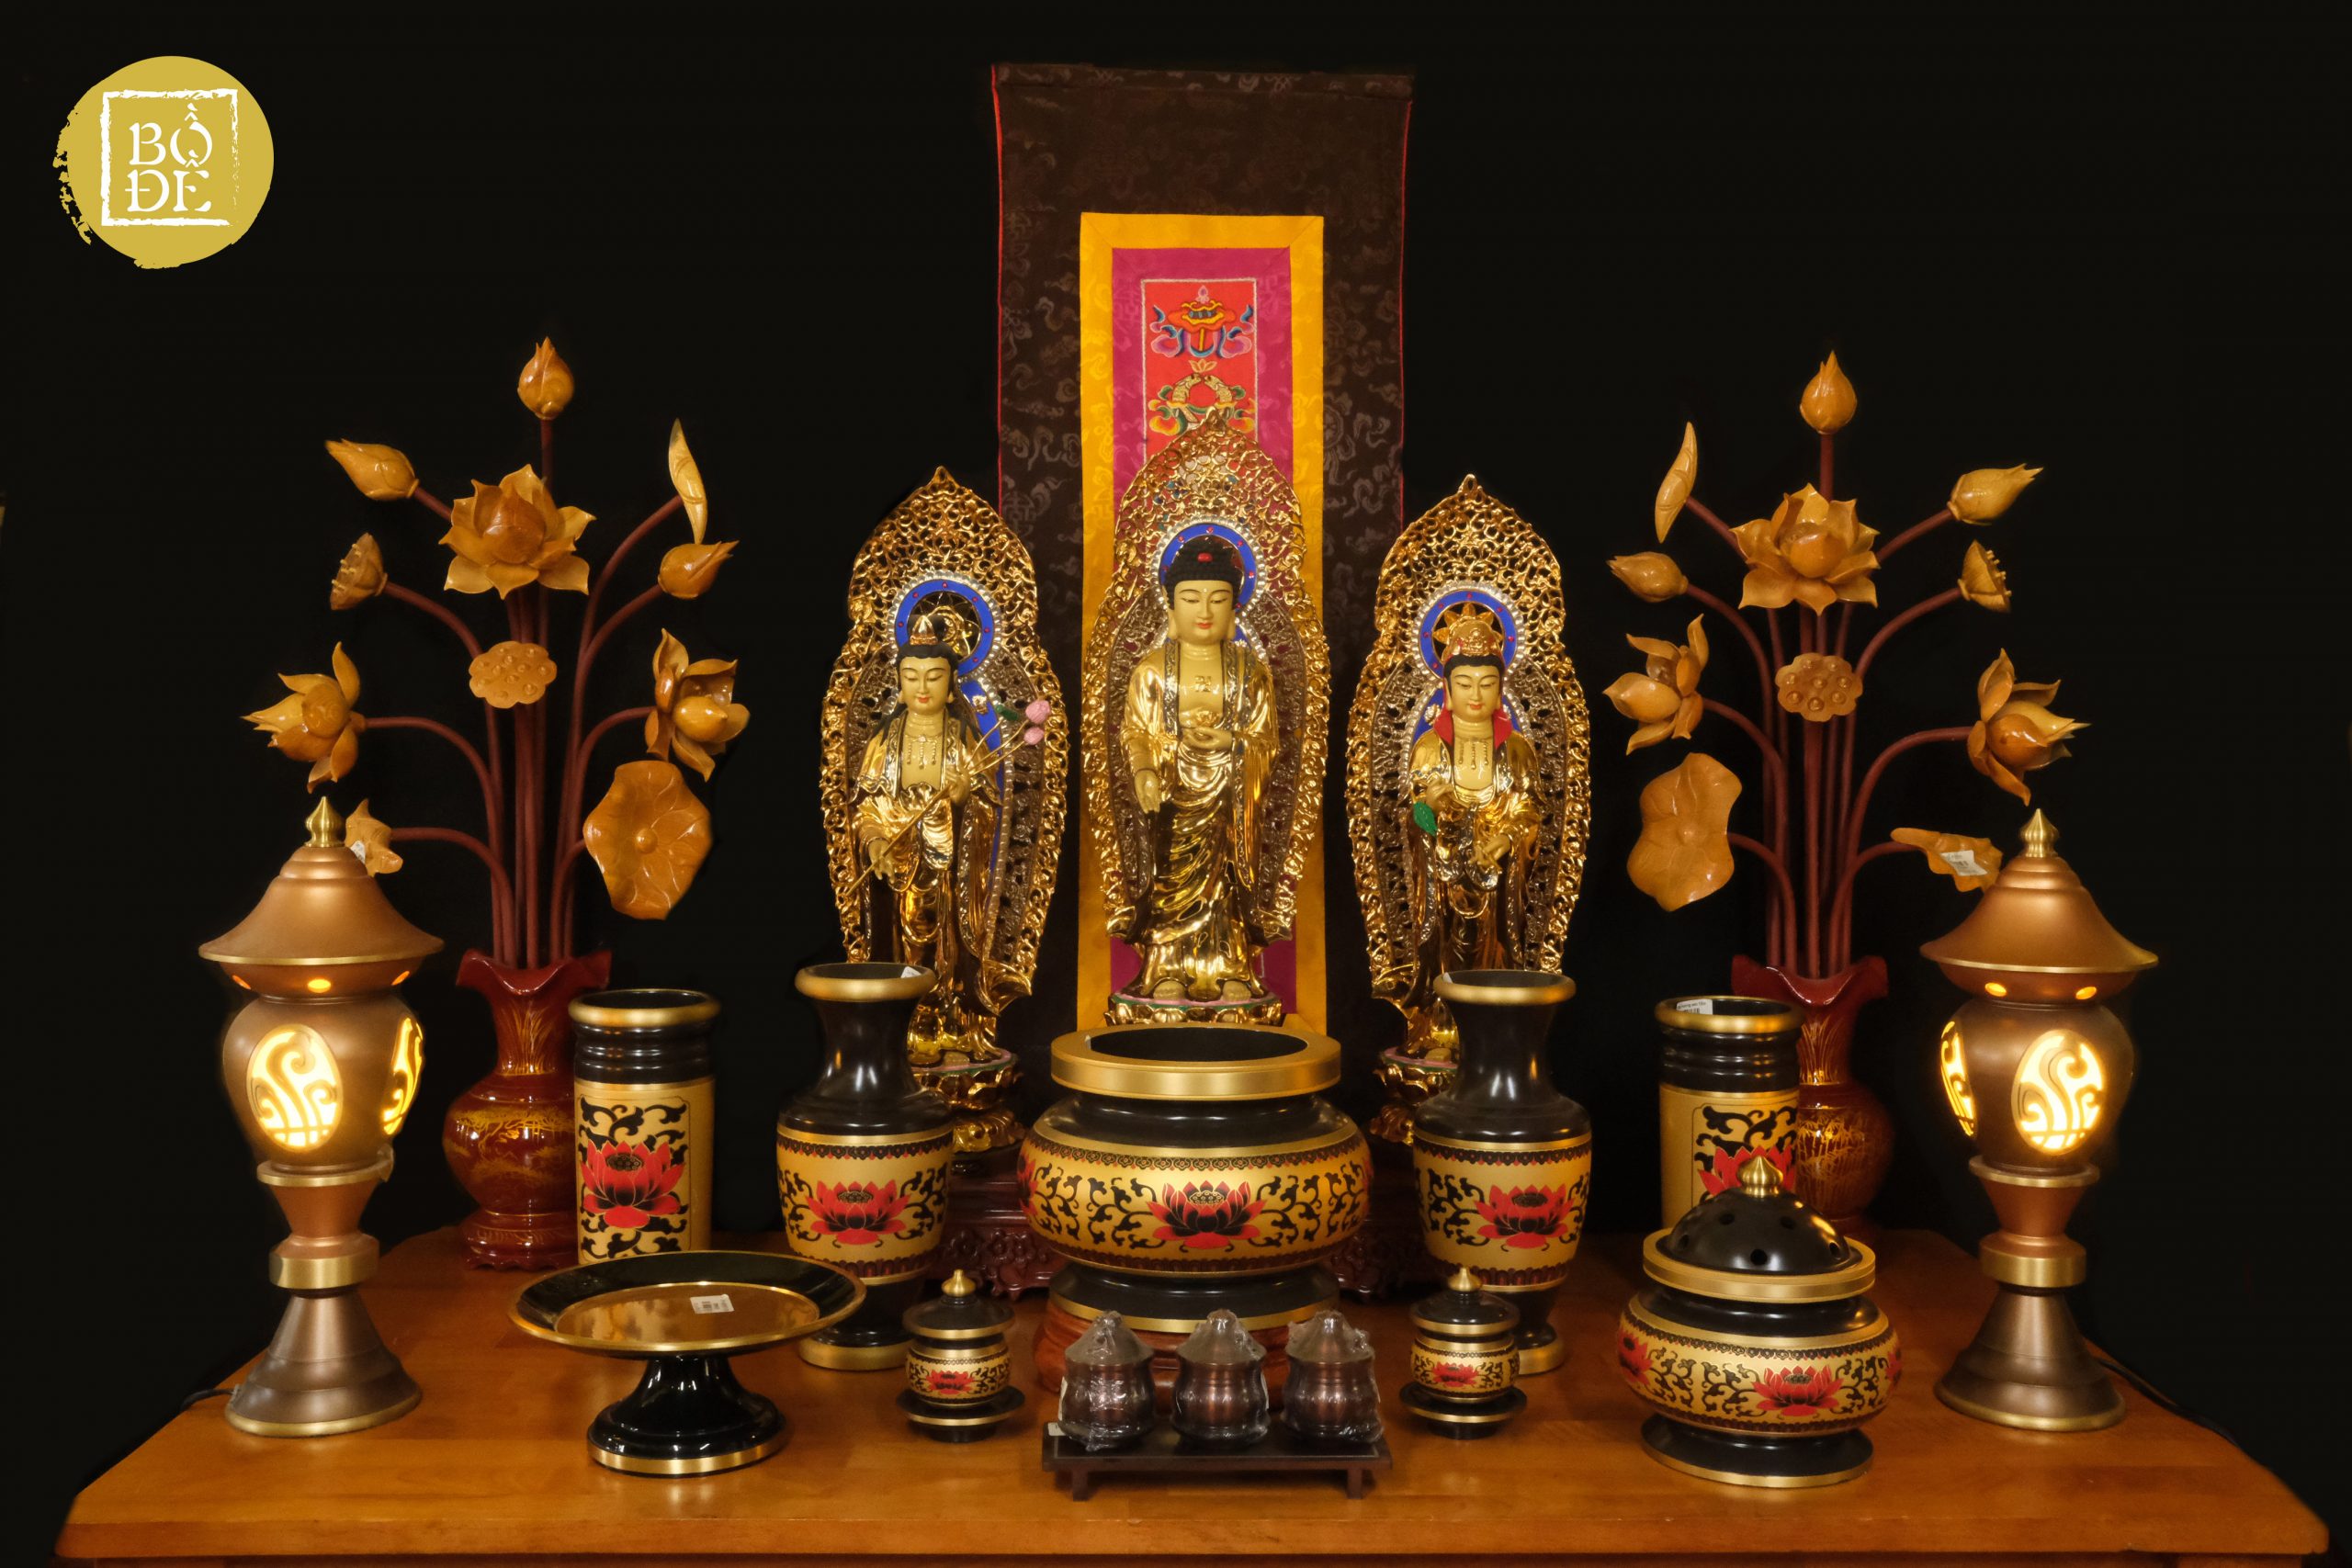 Vật Phẩm Phật Giáo: Vật phẩm phật giáo là một phần không thể thiếu trong việc tôn thờ và cầu sự bình an. Những vật phẩm này bao gồm những đồ gốm, đồng, sứ, thủy tinh, đá quý… được chế tác một cách tinh xảo và giàu ý nghĩa. Cùng xem hình ảnh vật phẩm phật giáo đẹp mắt để tìm hiểu thêm về đạo Phật và tìm kiếm sự thanh tịnh!